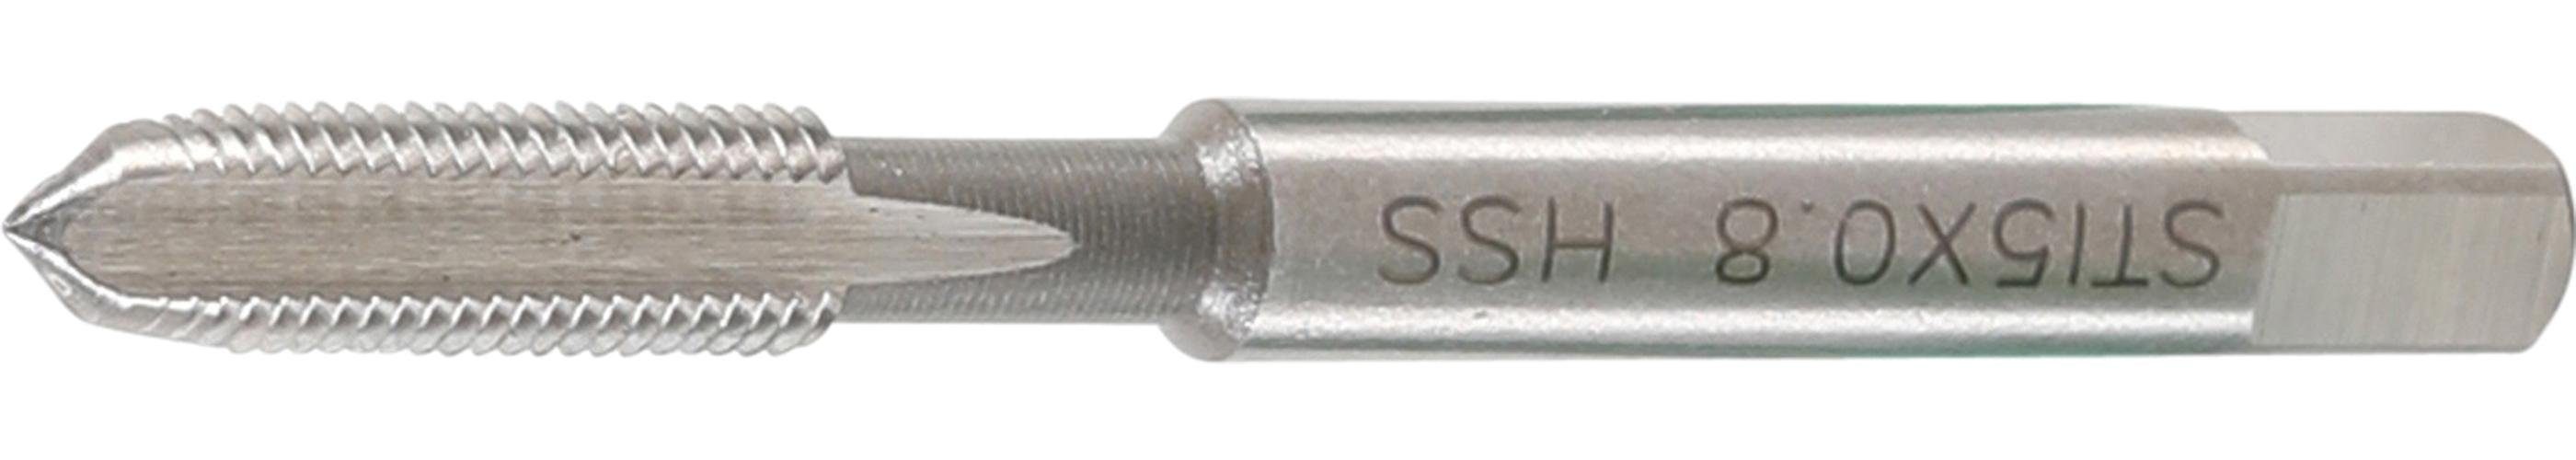 HSS-G, technic mm Gewindebohrer M5 0,8 BGS STI-Einschnitt-Gewindebohrer, x